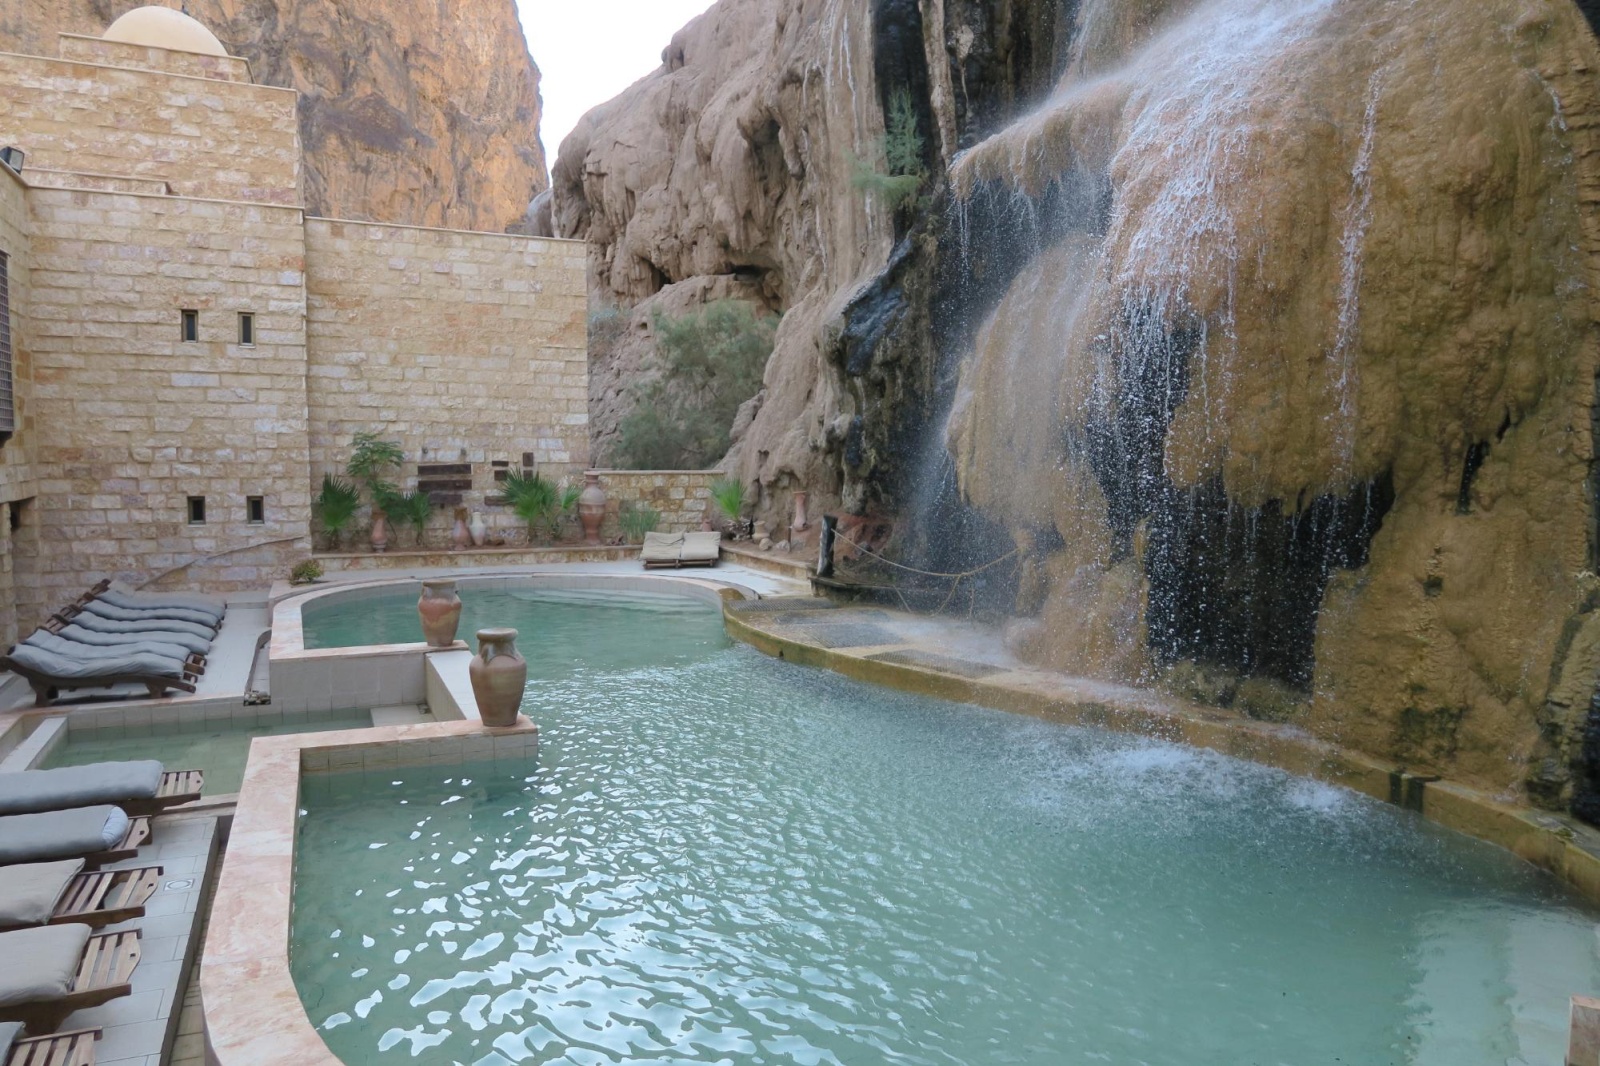 Jordan Tour Ma’in Hot Springs